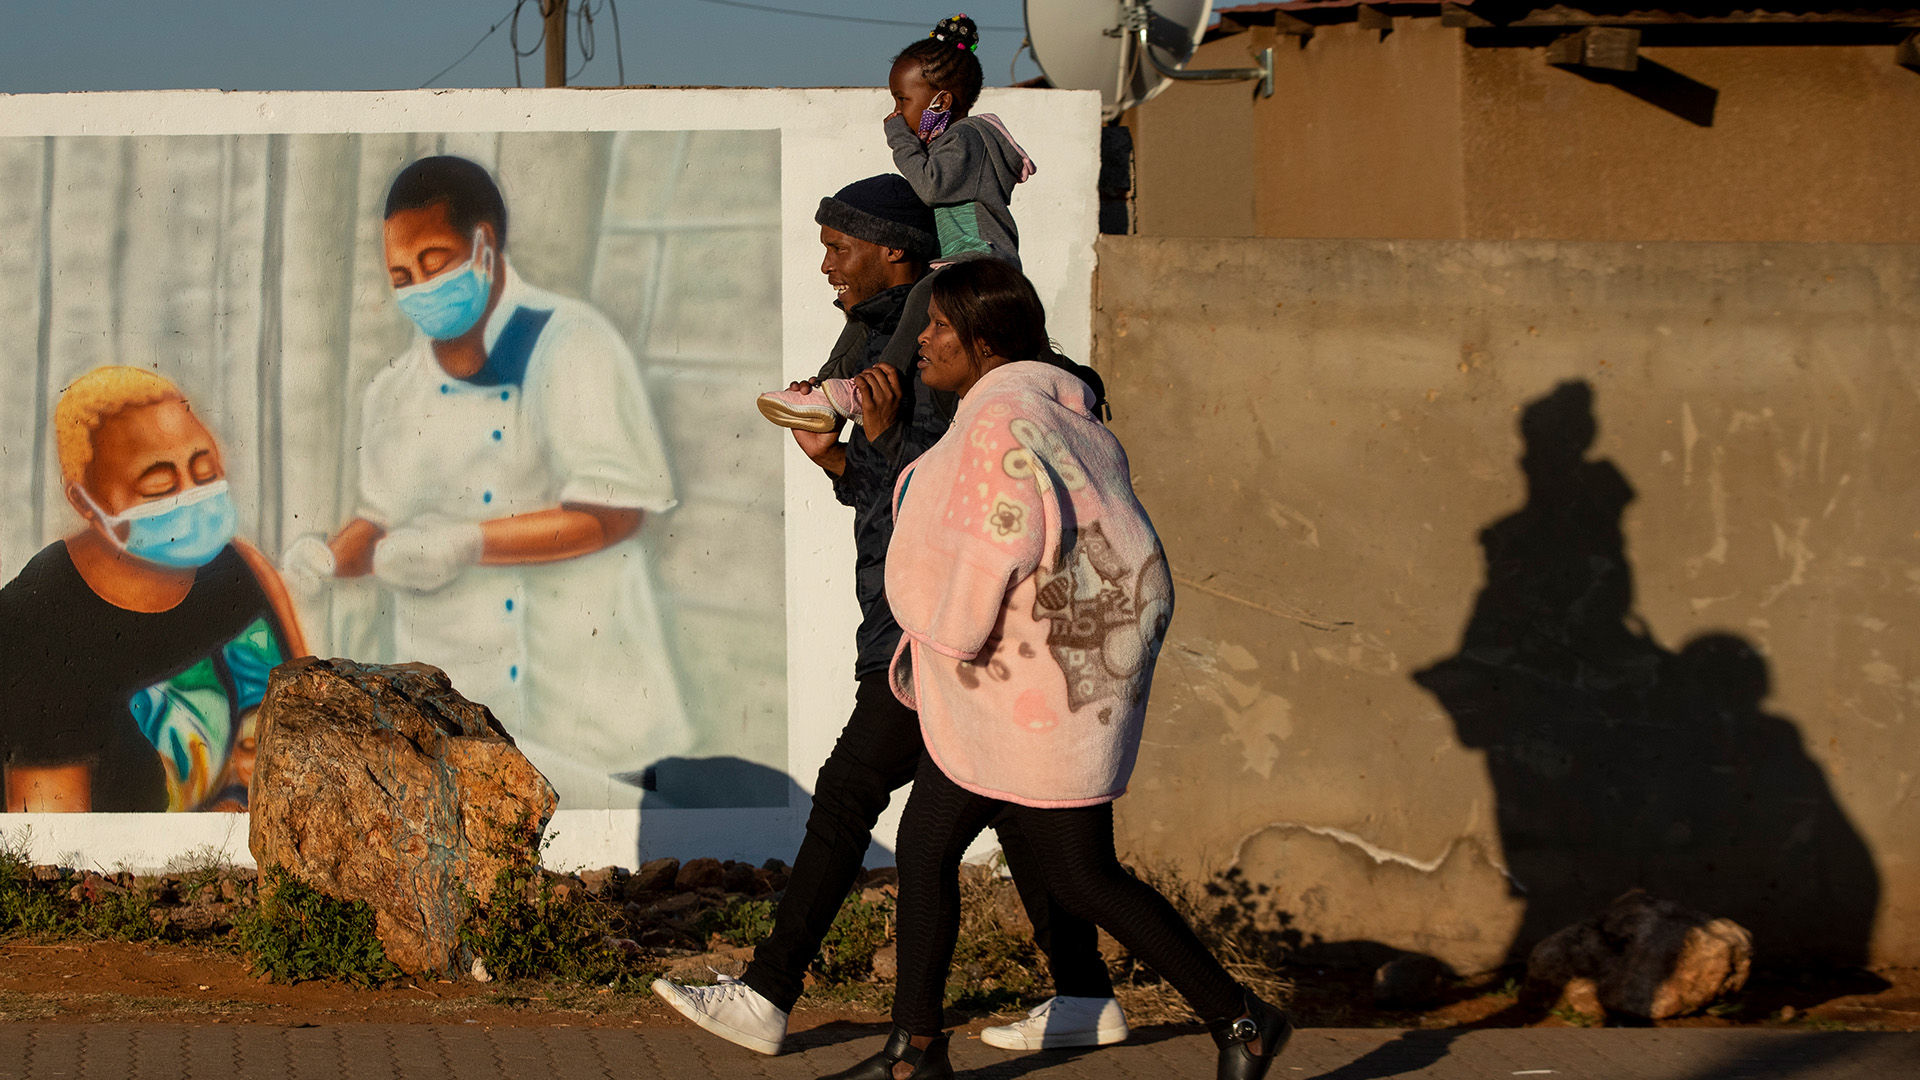 Eine Familie in Duduza (Südafrika) geht an einem Wandbild vorbei, das für eine Corona-Impfung wirbt. | dpa